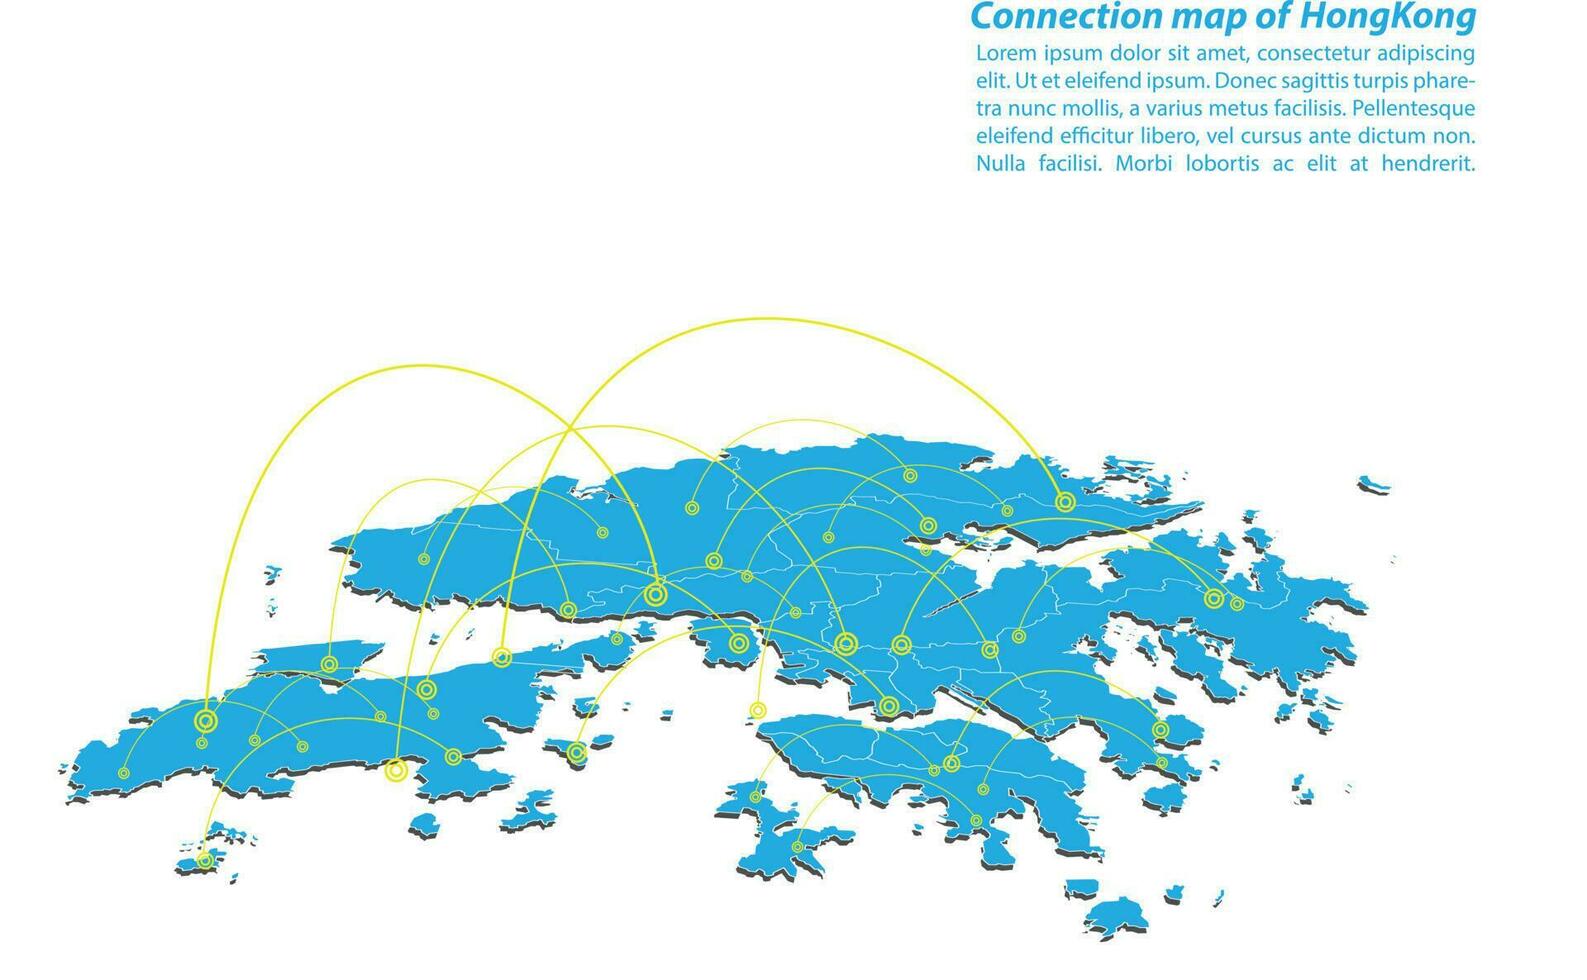 Modern von Hong Kong Kartenverbindungen Netzwerkdesign, bestes Internetkonzept des Hong Kong Kartengeschäfts aus Konzeptserien, Kartenpunkt- und Linienzusammensetzung. Infografik-Karte. Vektor-Illustration. vektor